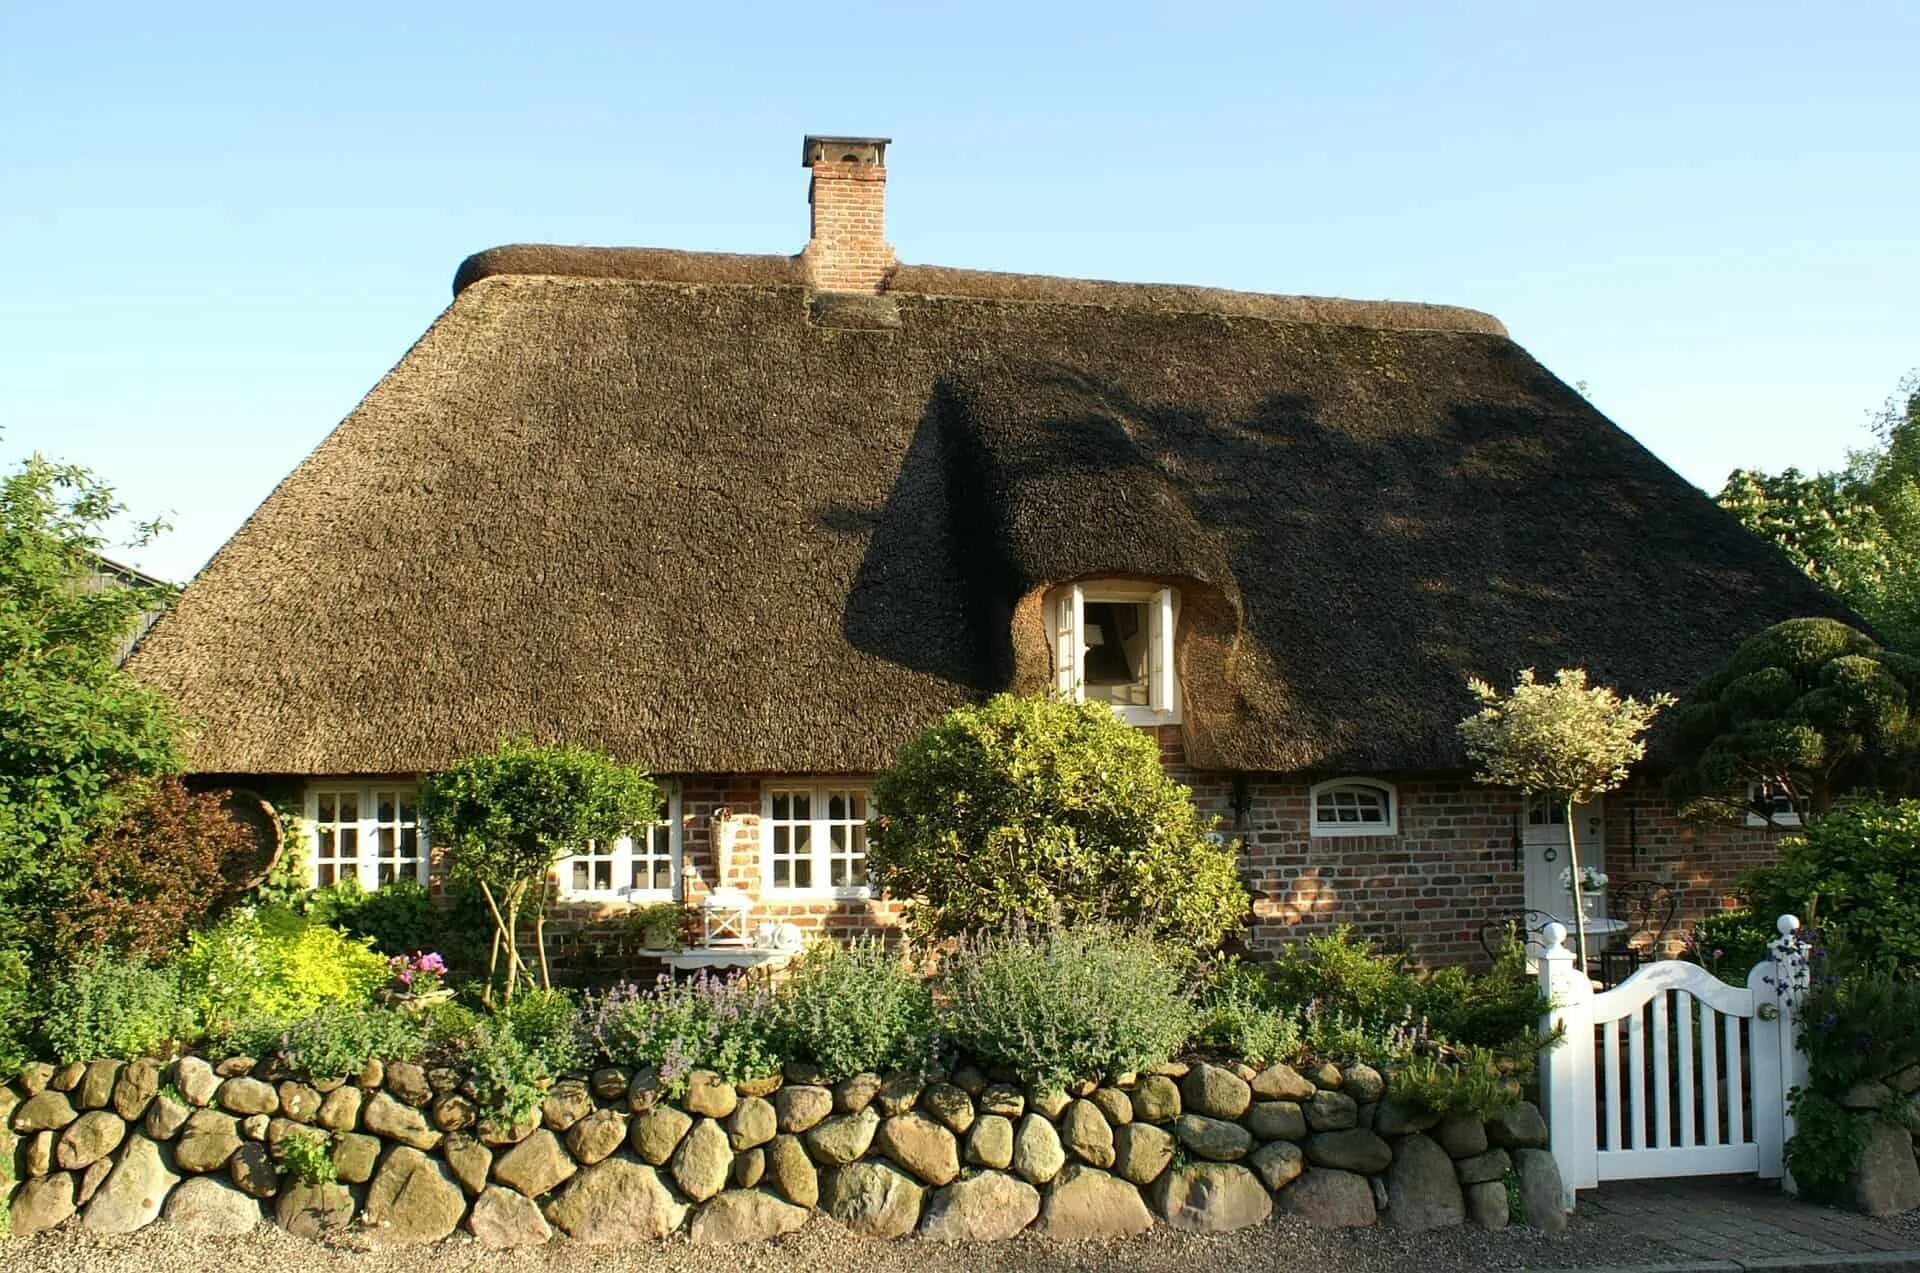 Классический деревенский дом с соломенной крышей в Англии. Соломенные крыши в Англии. Мазанка с соломенной крышей. Коттедж в Англии с соломенной крышей.